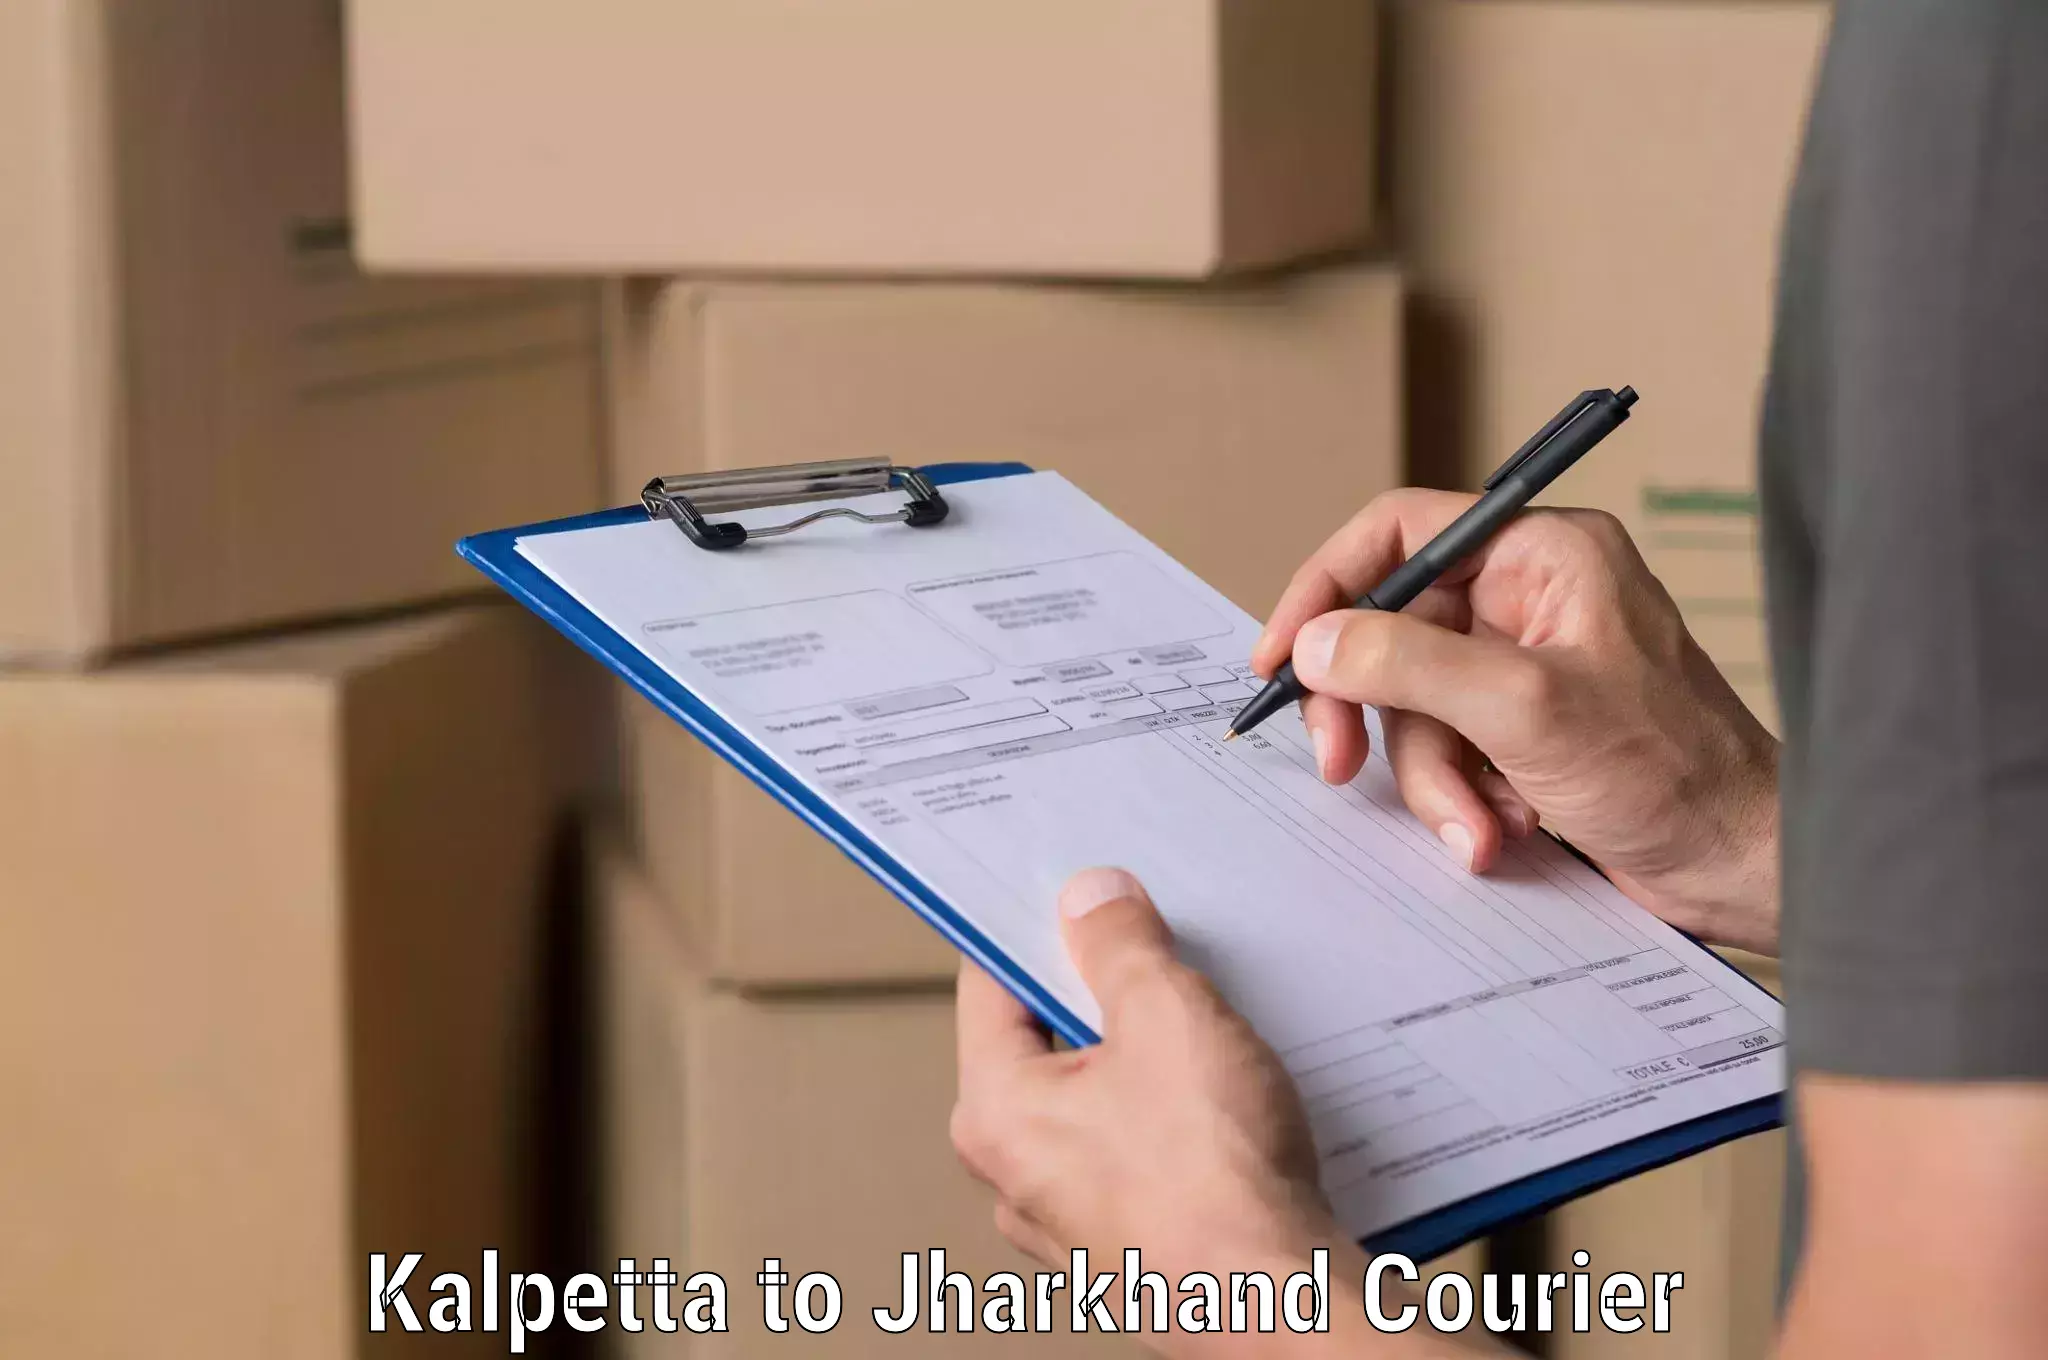 Urgent courier needs in Kalpetta to Nagar Untari